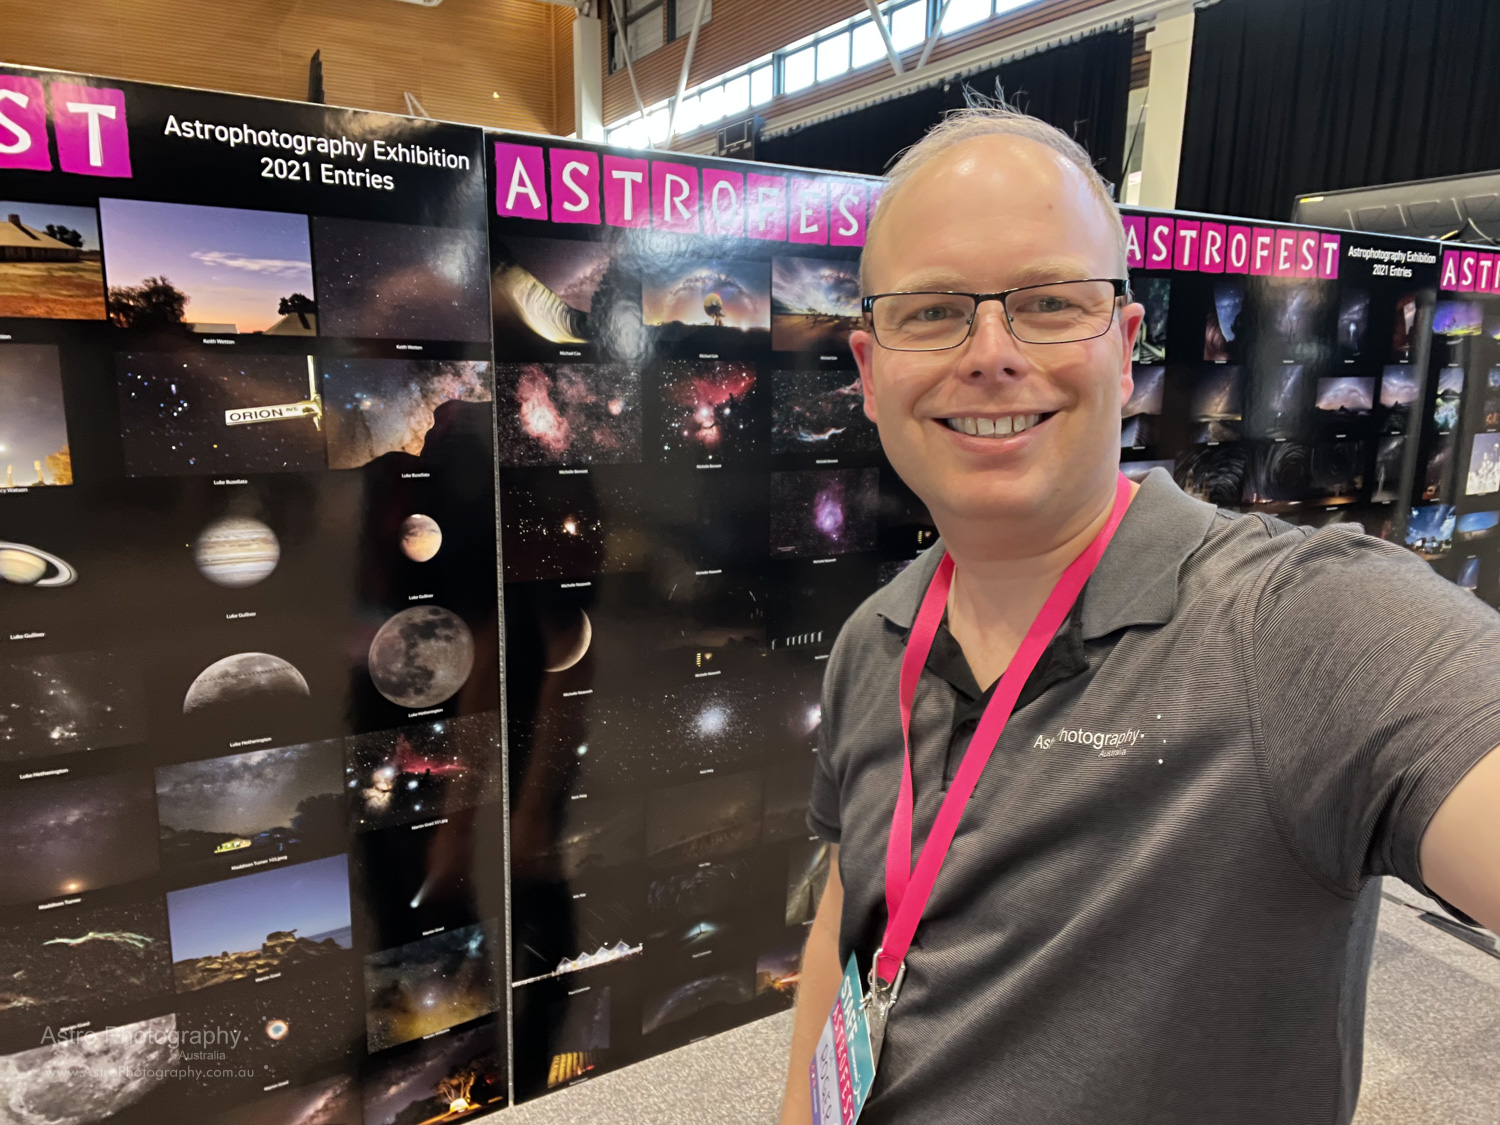 Roger Groom at Astrofest 2021